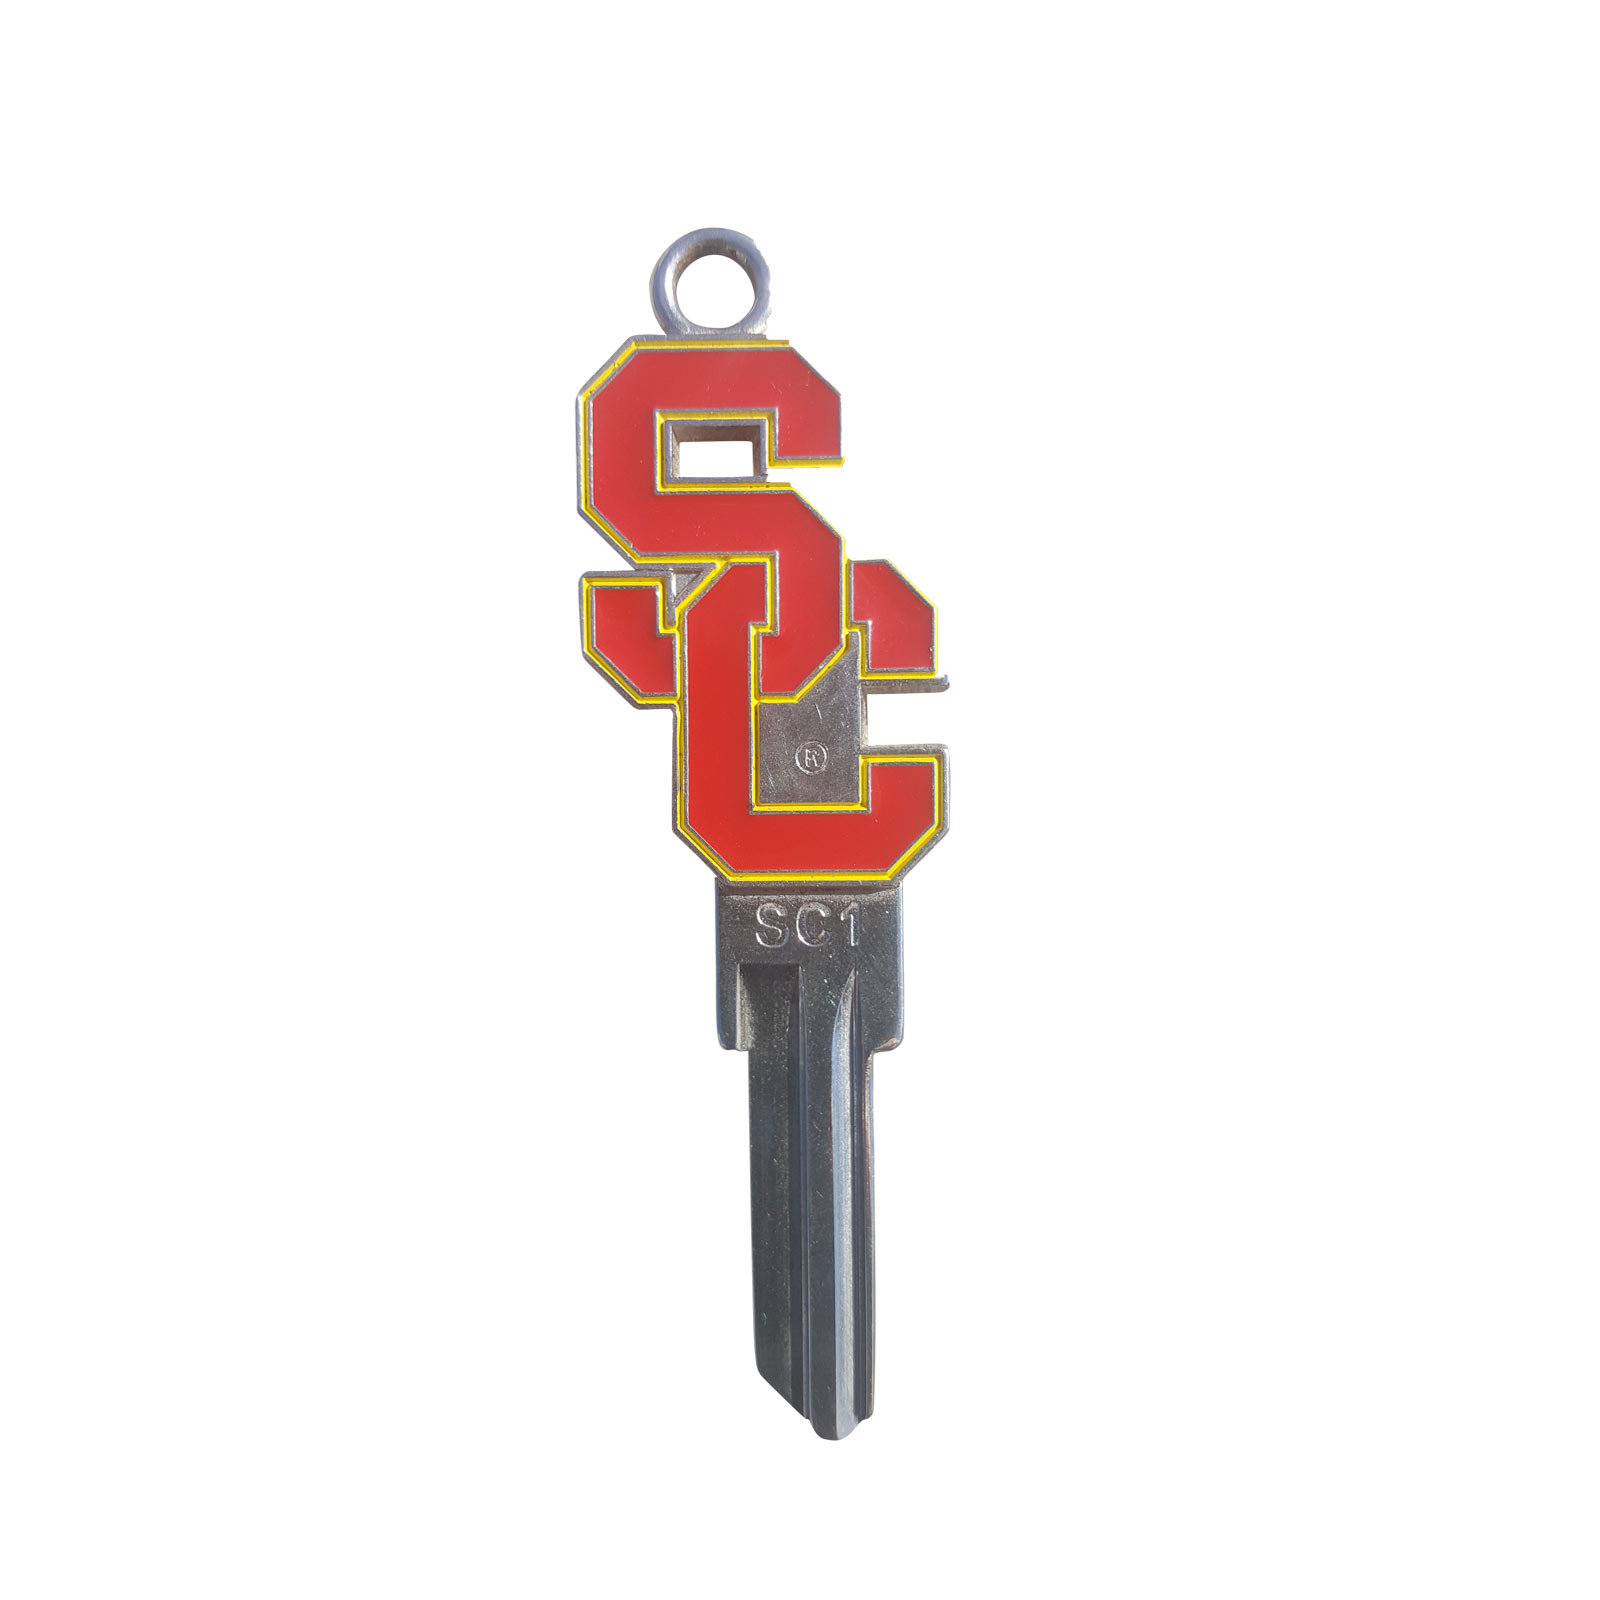 SC Interlock SC1 Key by Keypsake Inc. image01